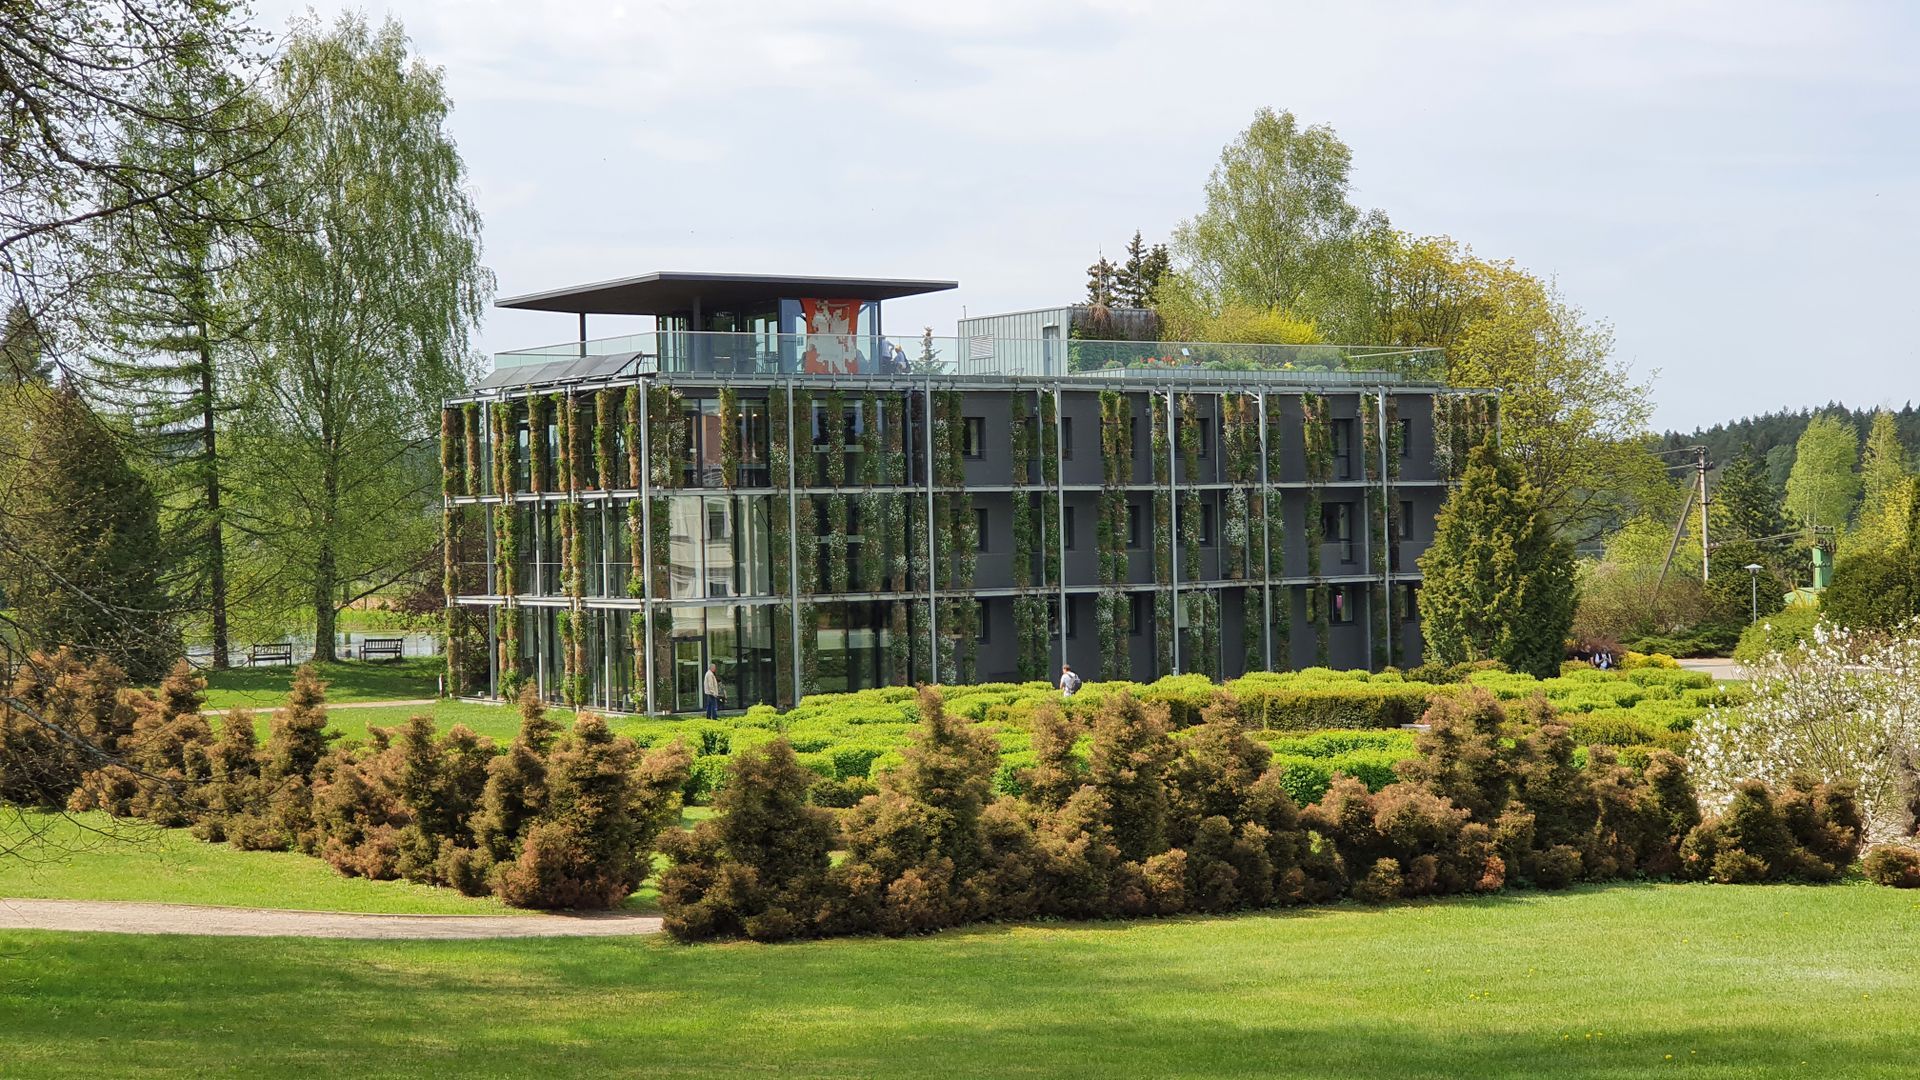 The Green Building of the VU Botanical Garden